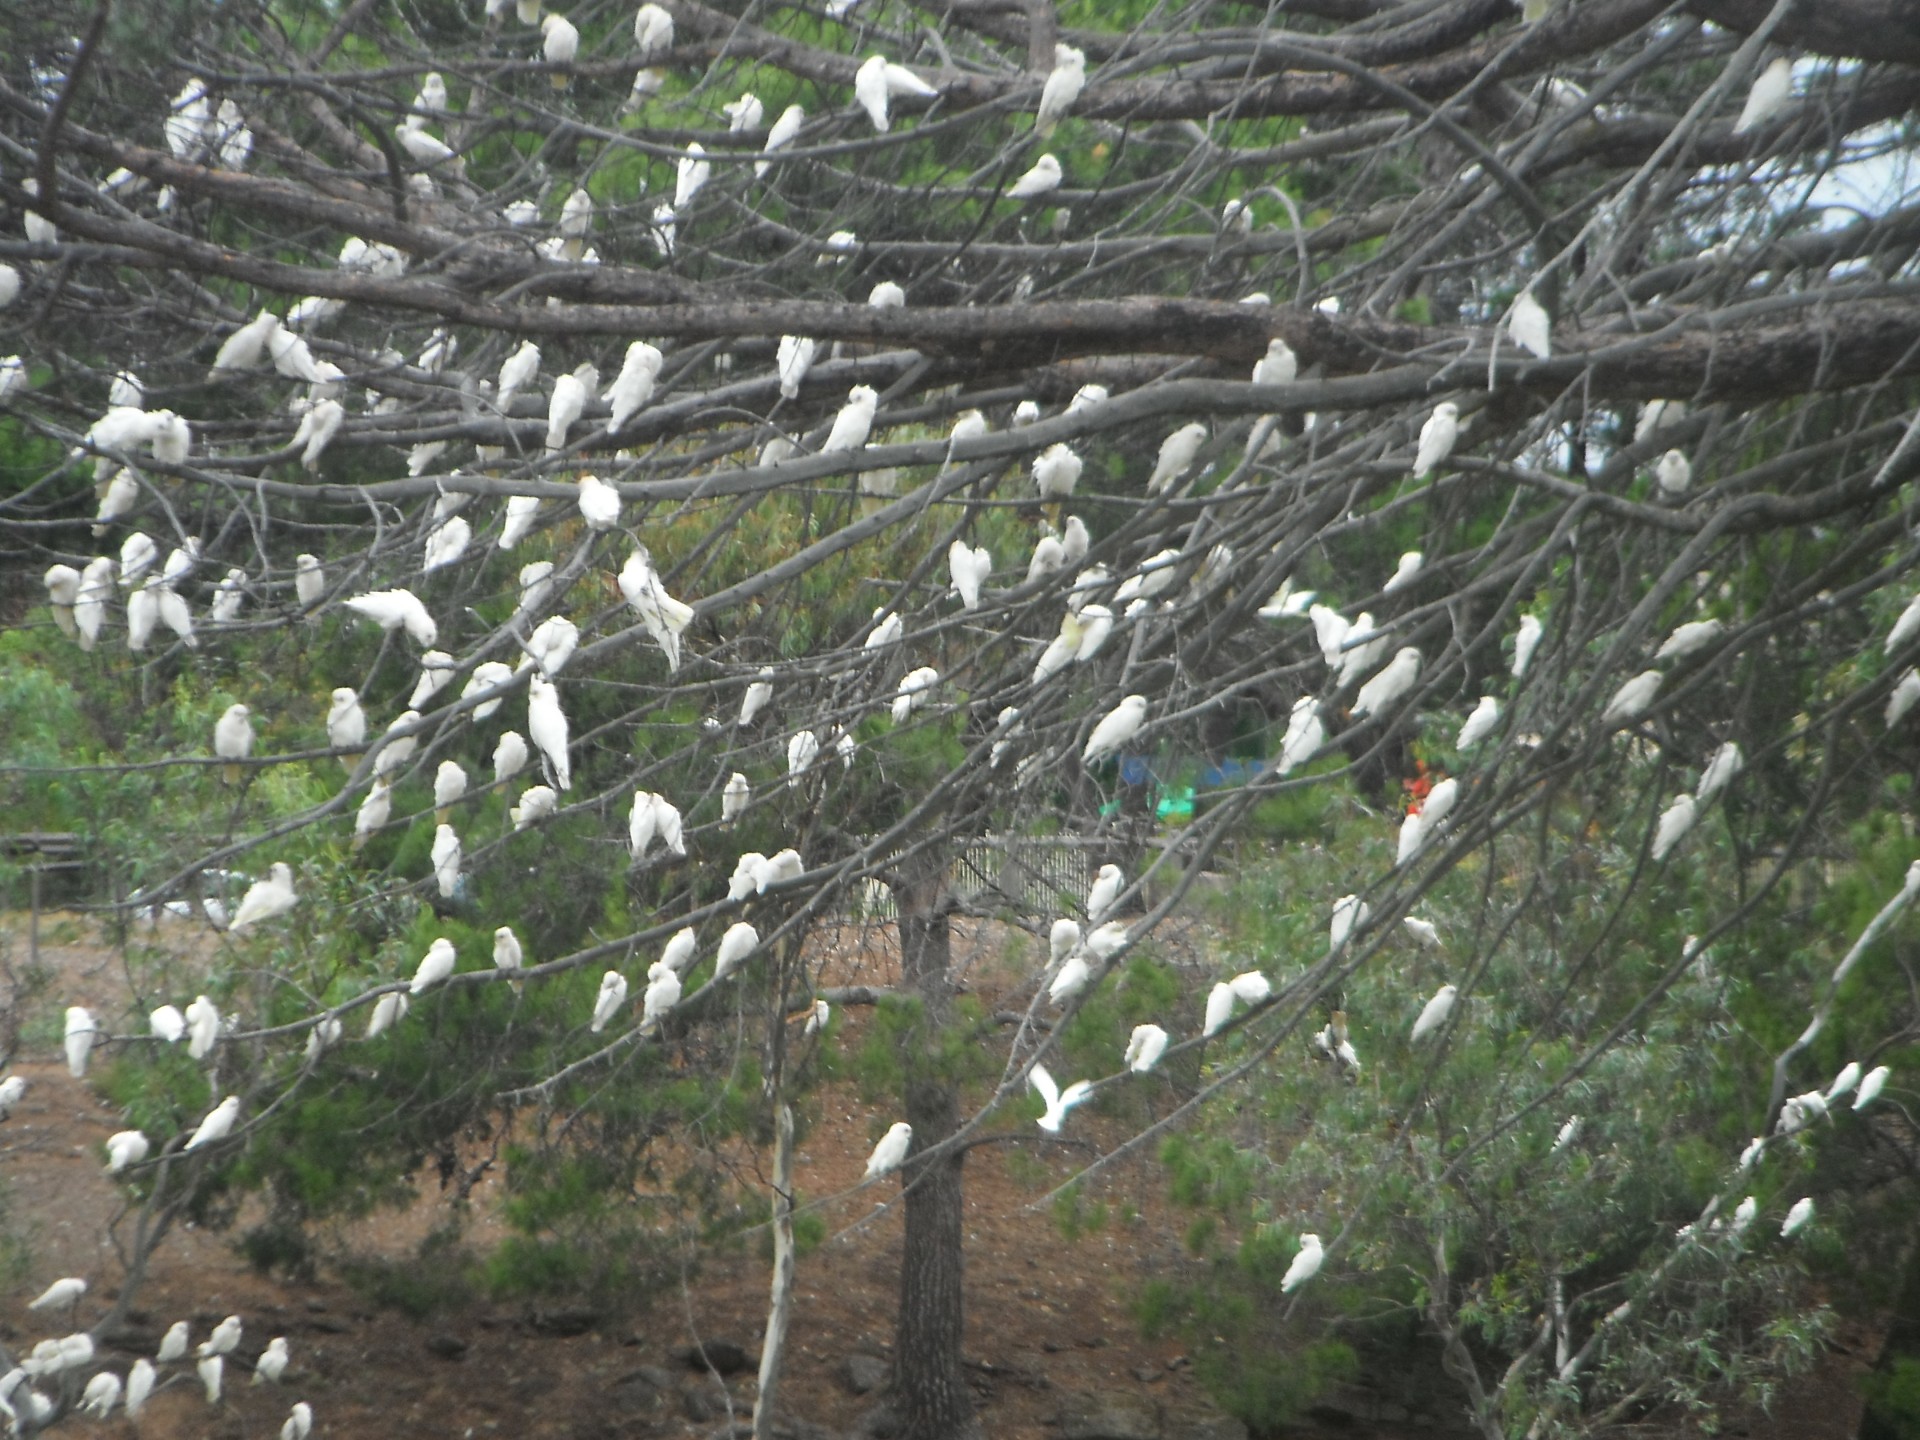 corrales white parrots tree free photo